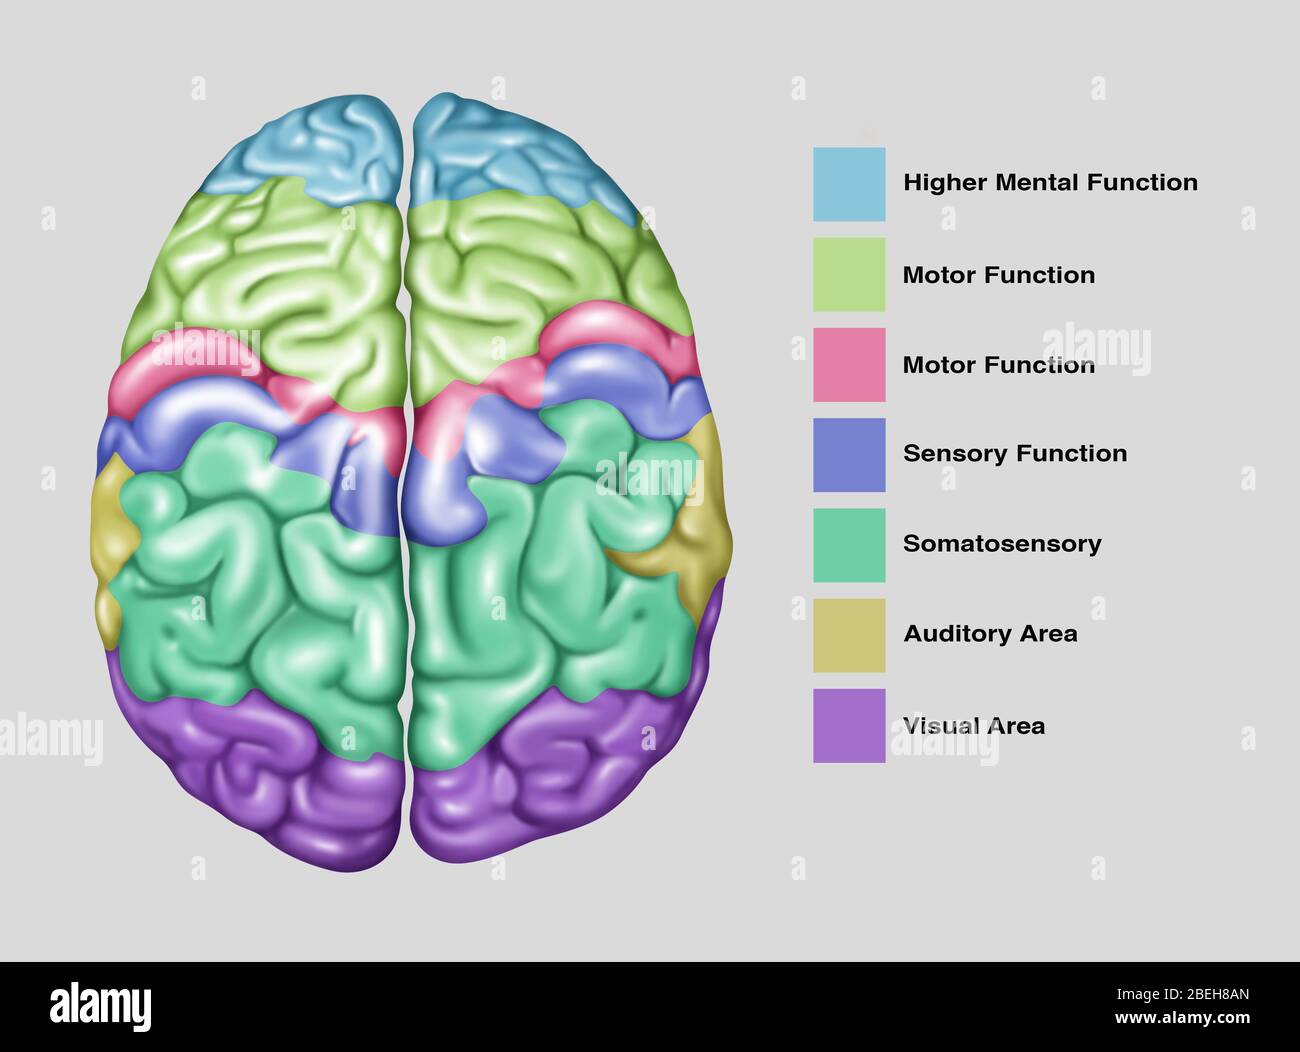 Brain Function, Illustration Stock Photo